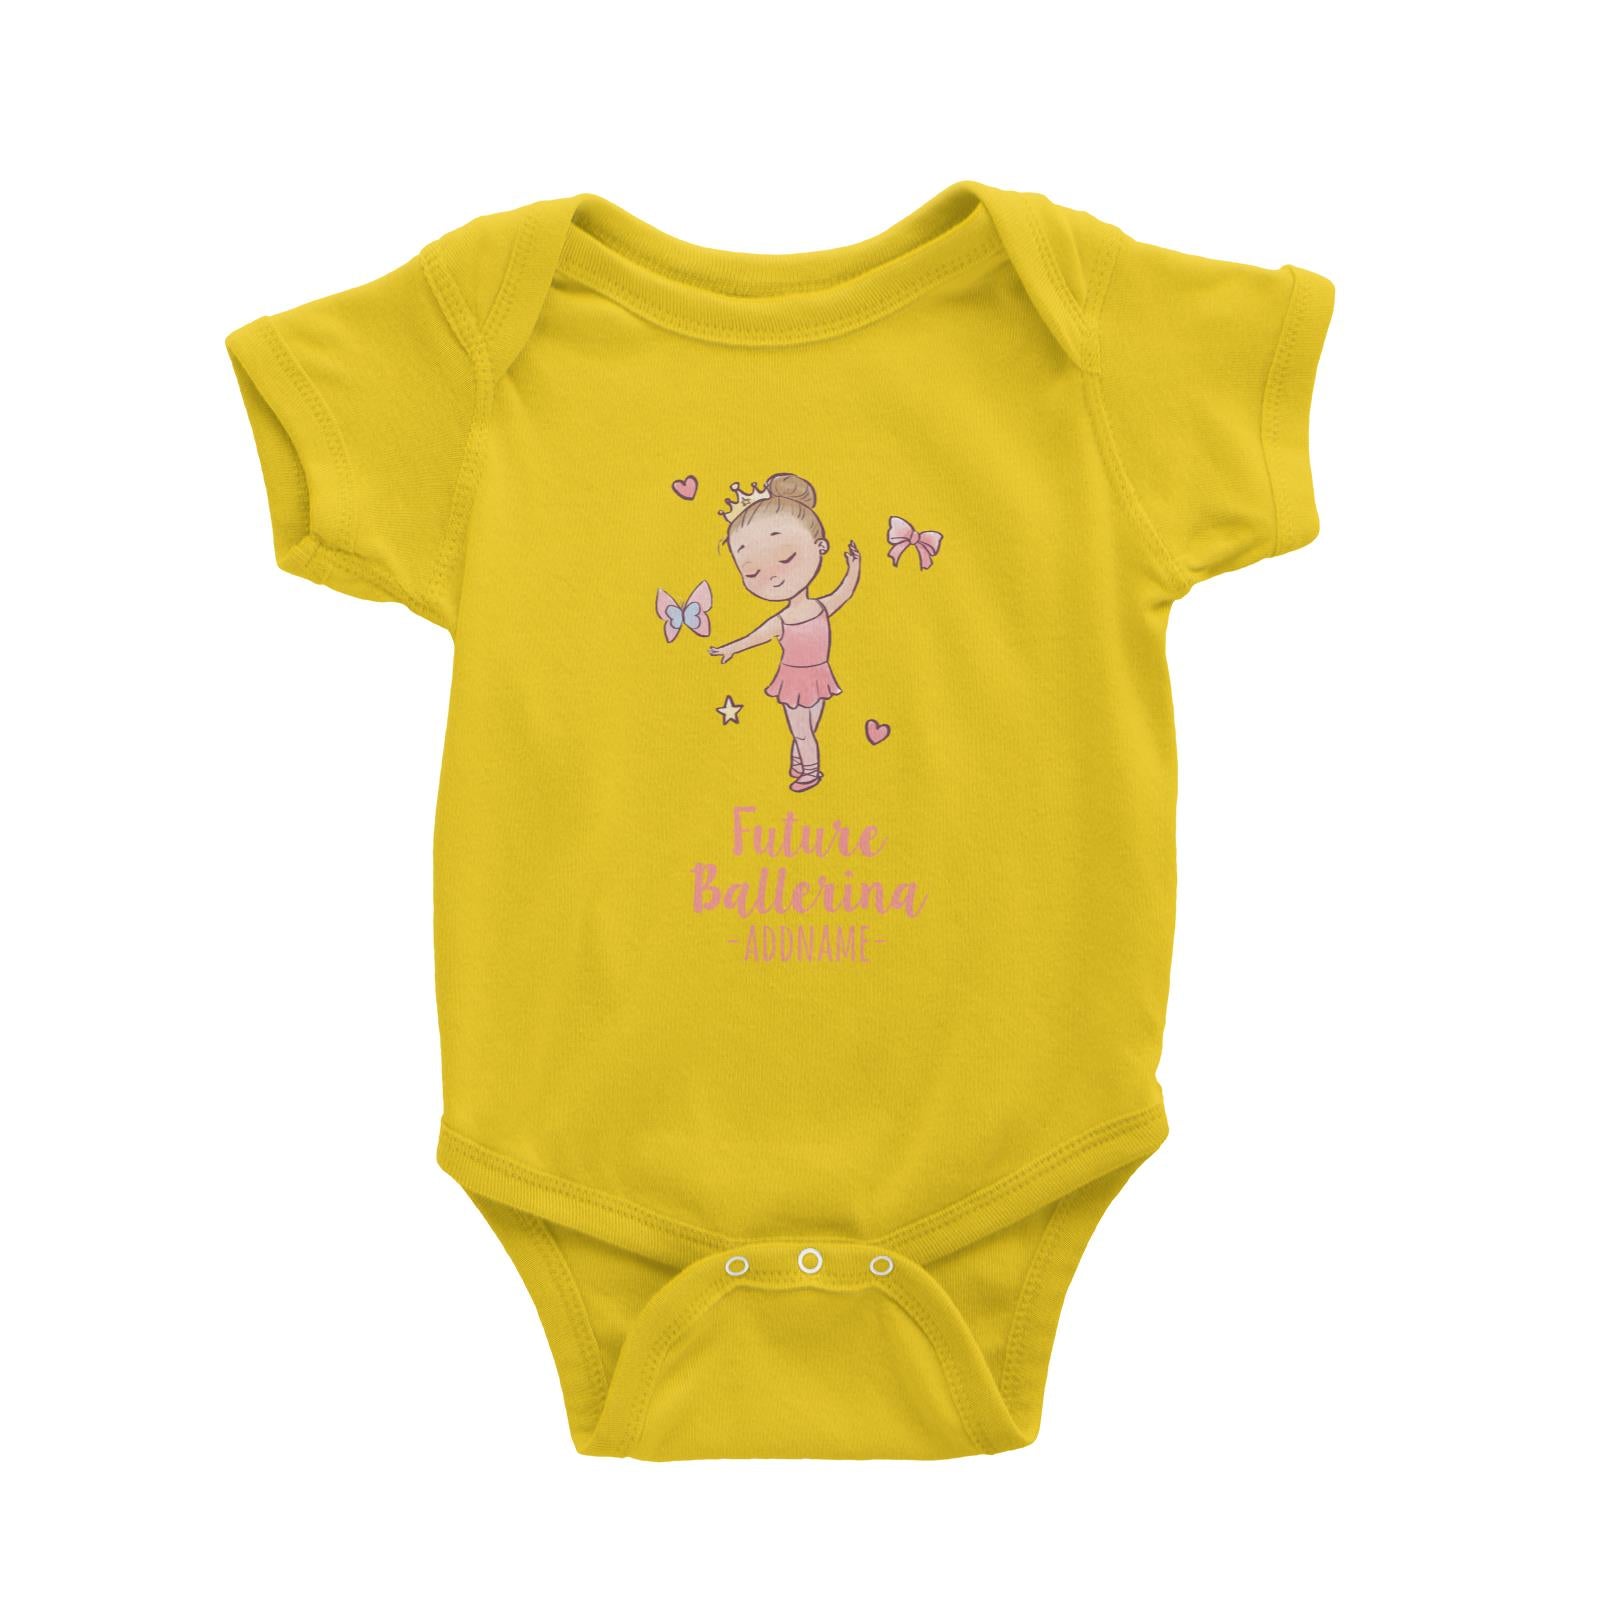 Future Ballerina Addname Baby Romper Personalizable Designs Basic Newborn